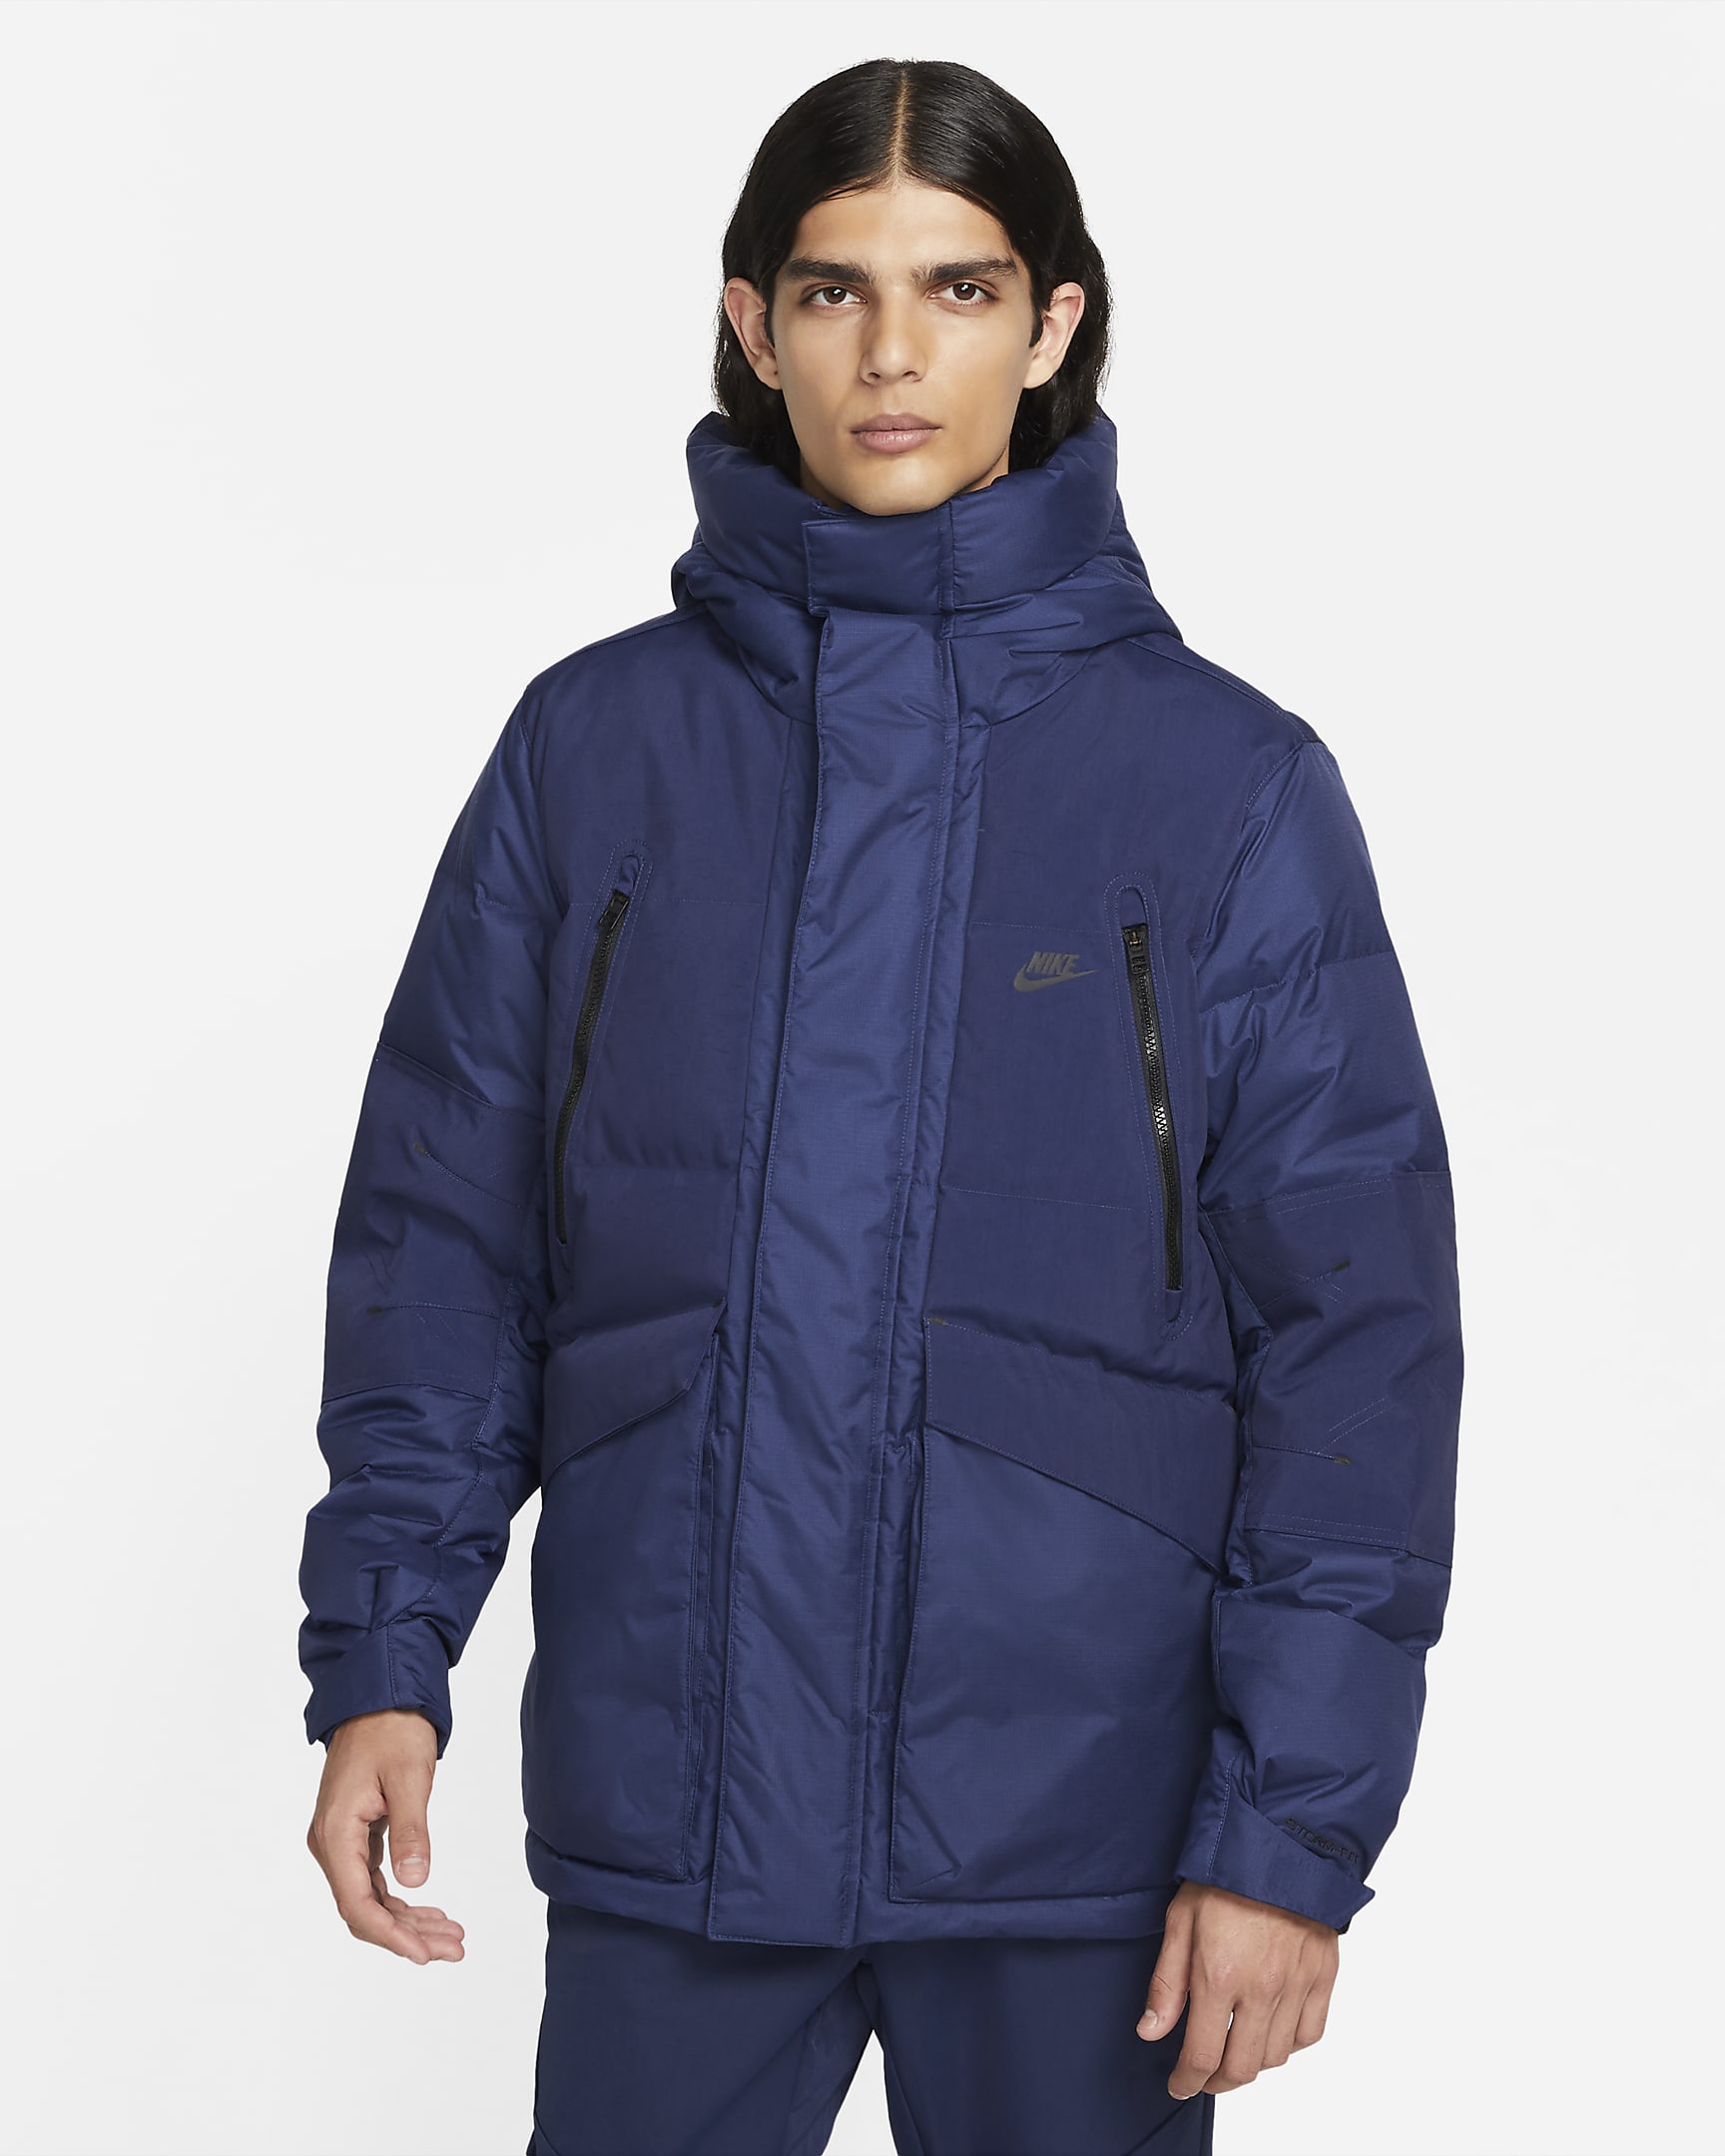 nike-sportswear-storm-fit-city-series-mens-hooded-jacket-rNNDjf.png